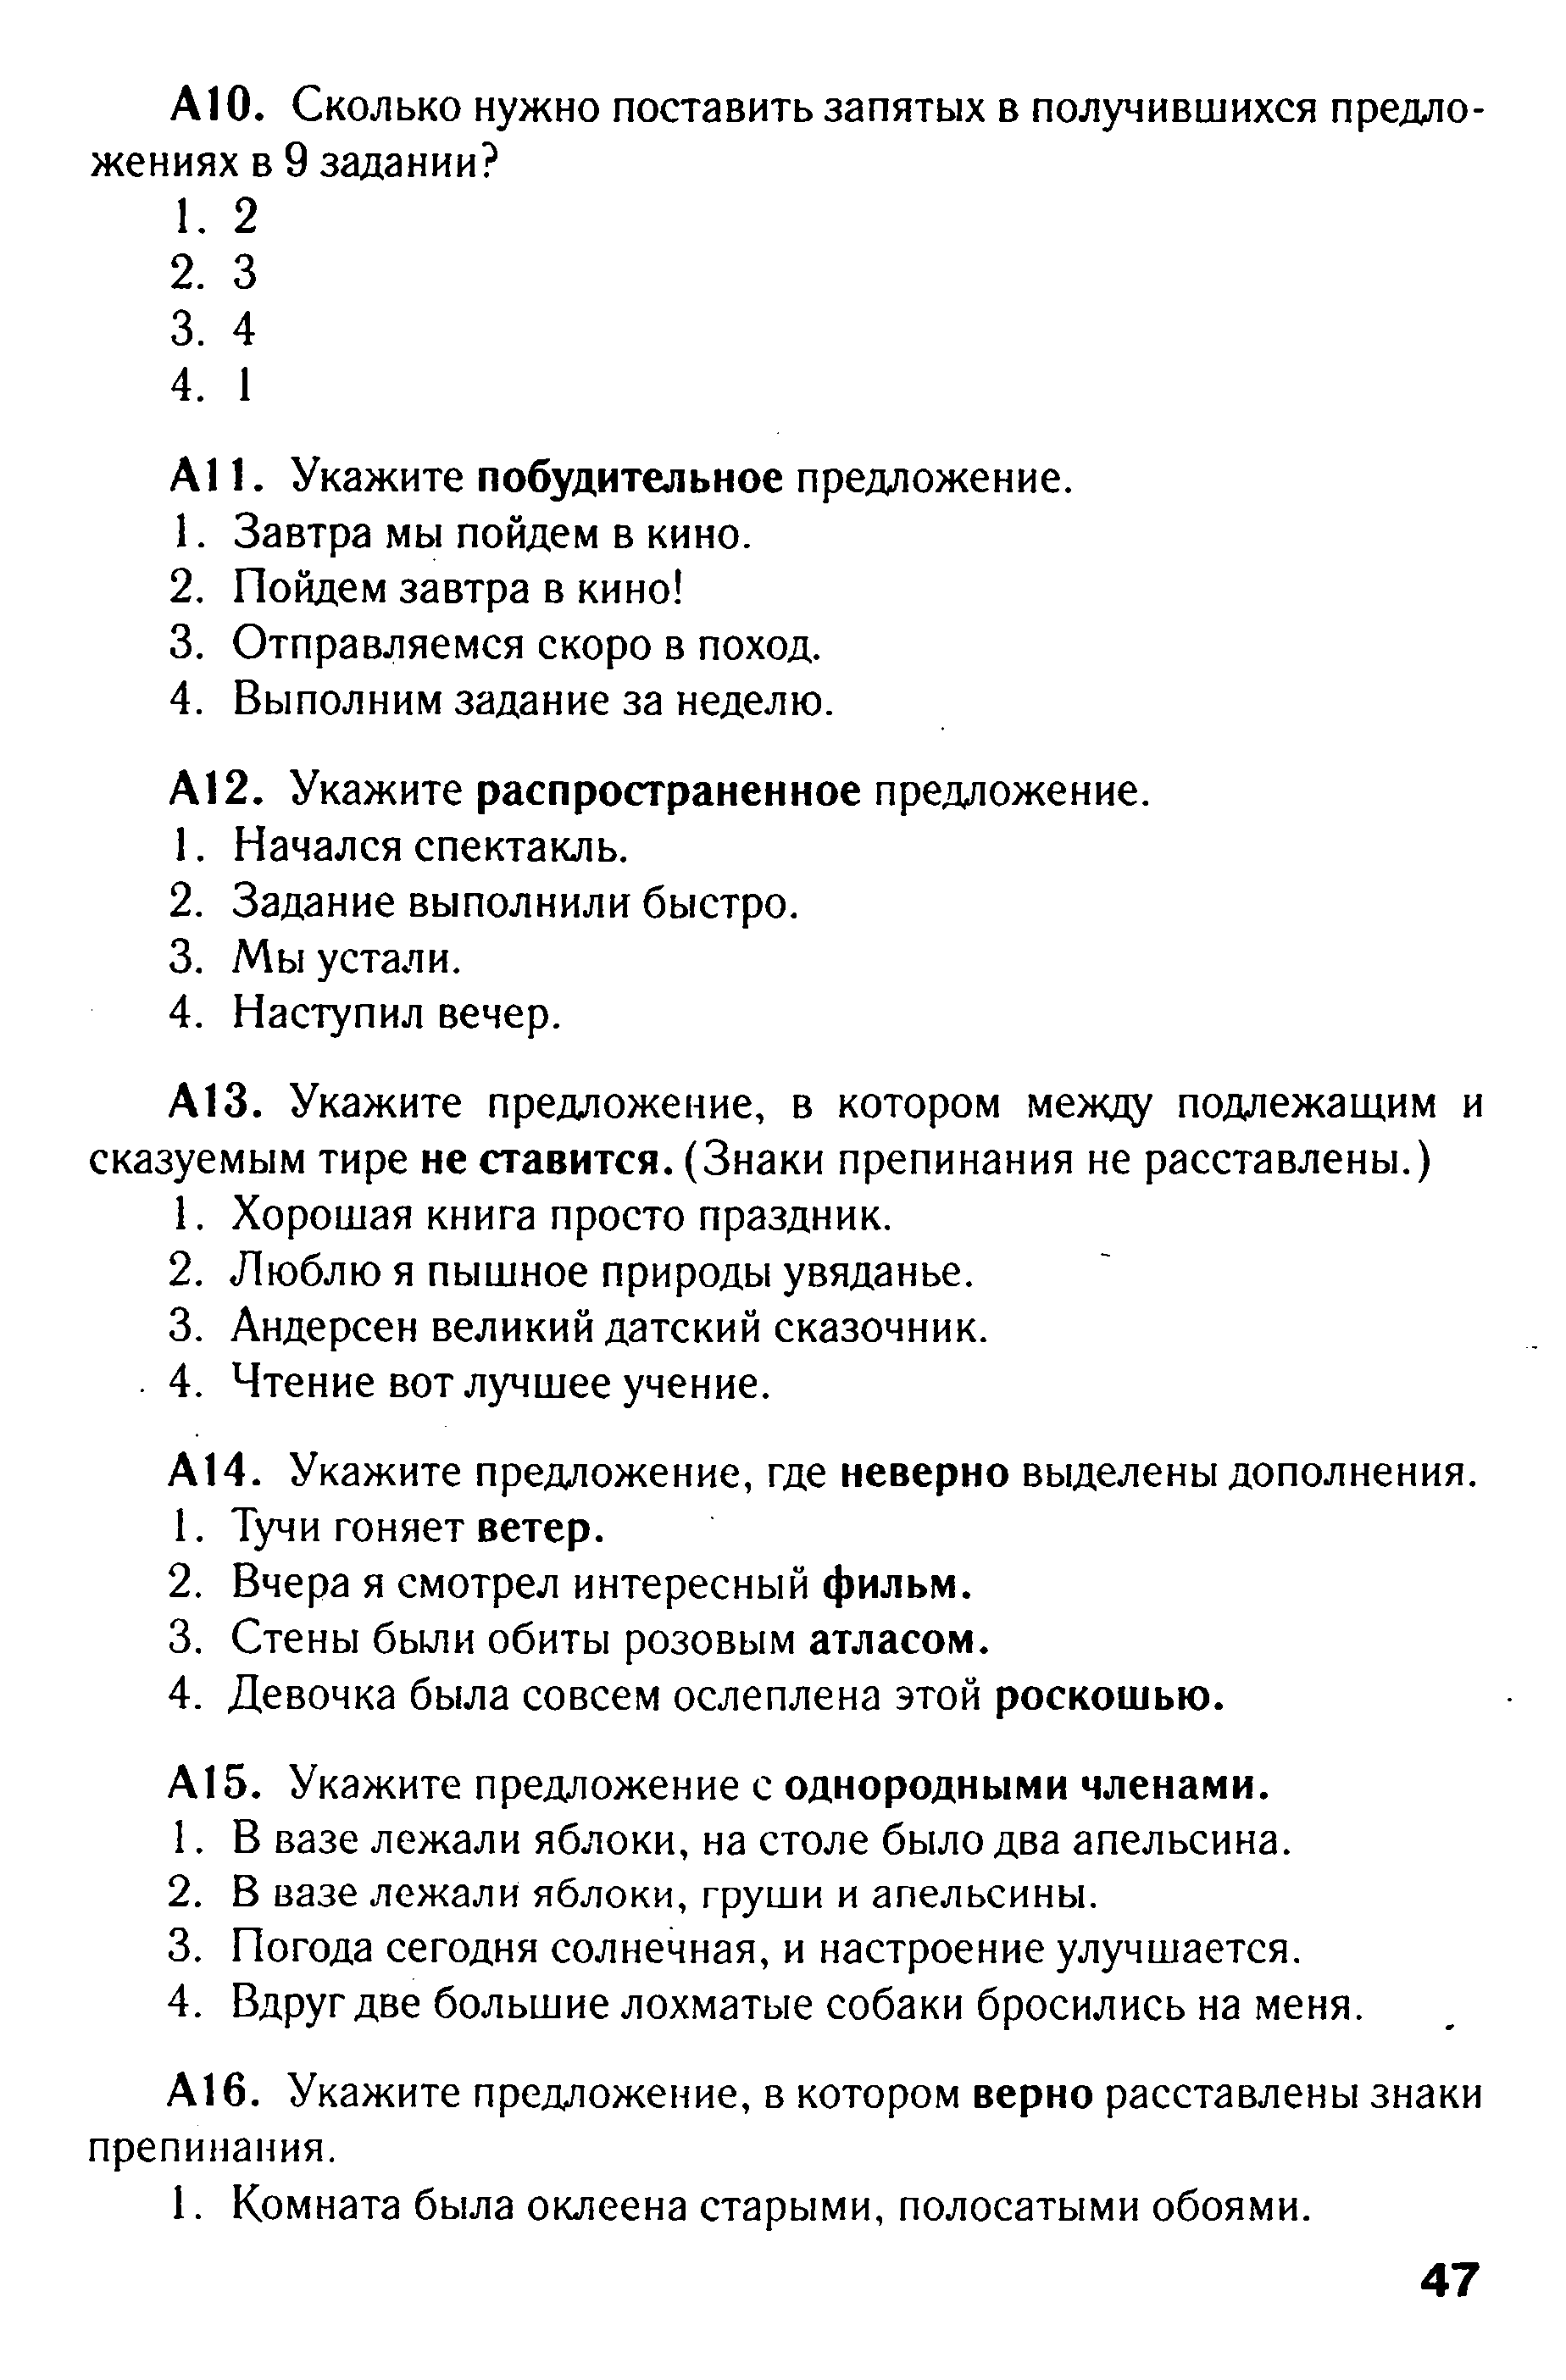 Тест по русскому языку в формате ГИА на тему: Синтаксис вариант 1 (5 класс)